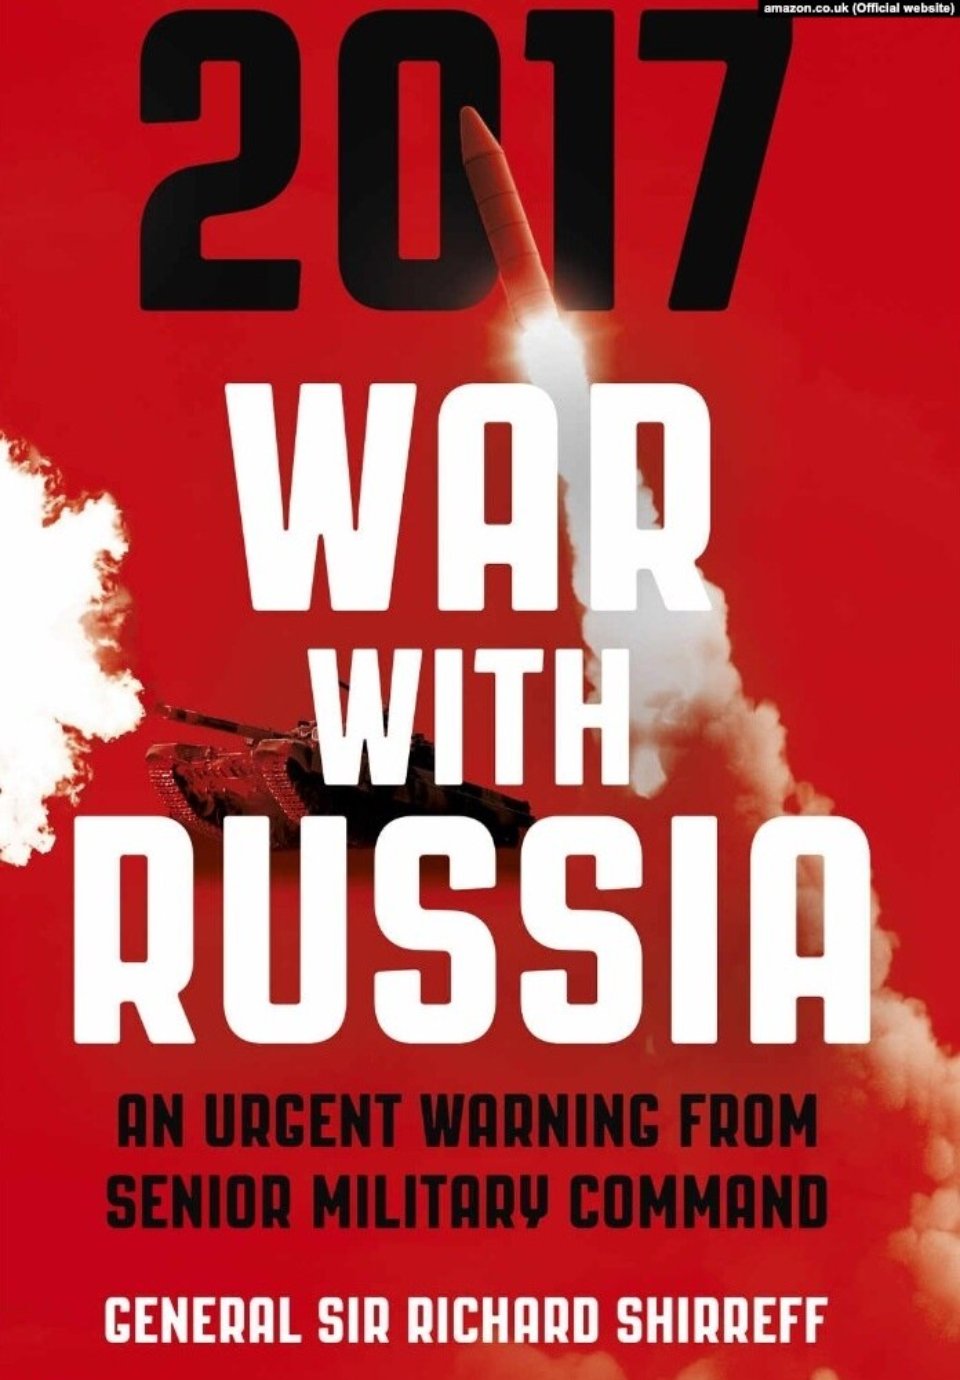 2017: війна з Росією